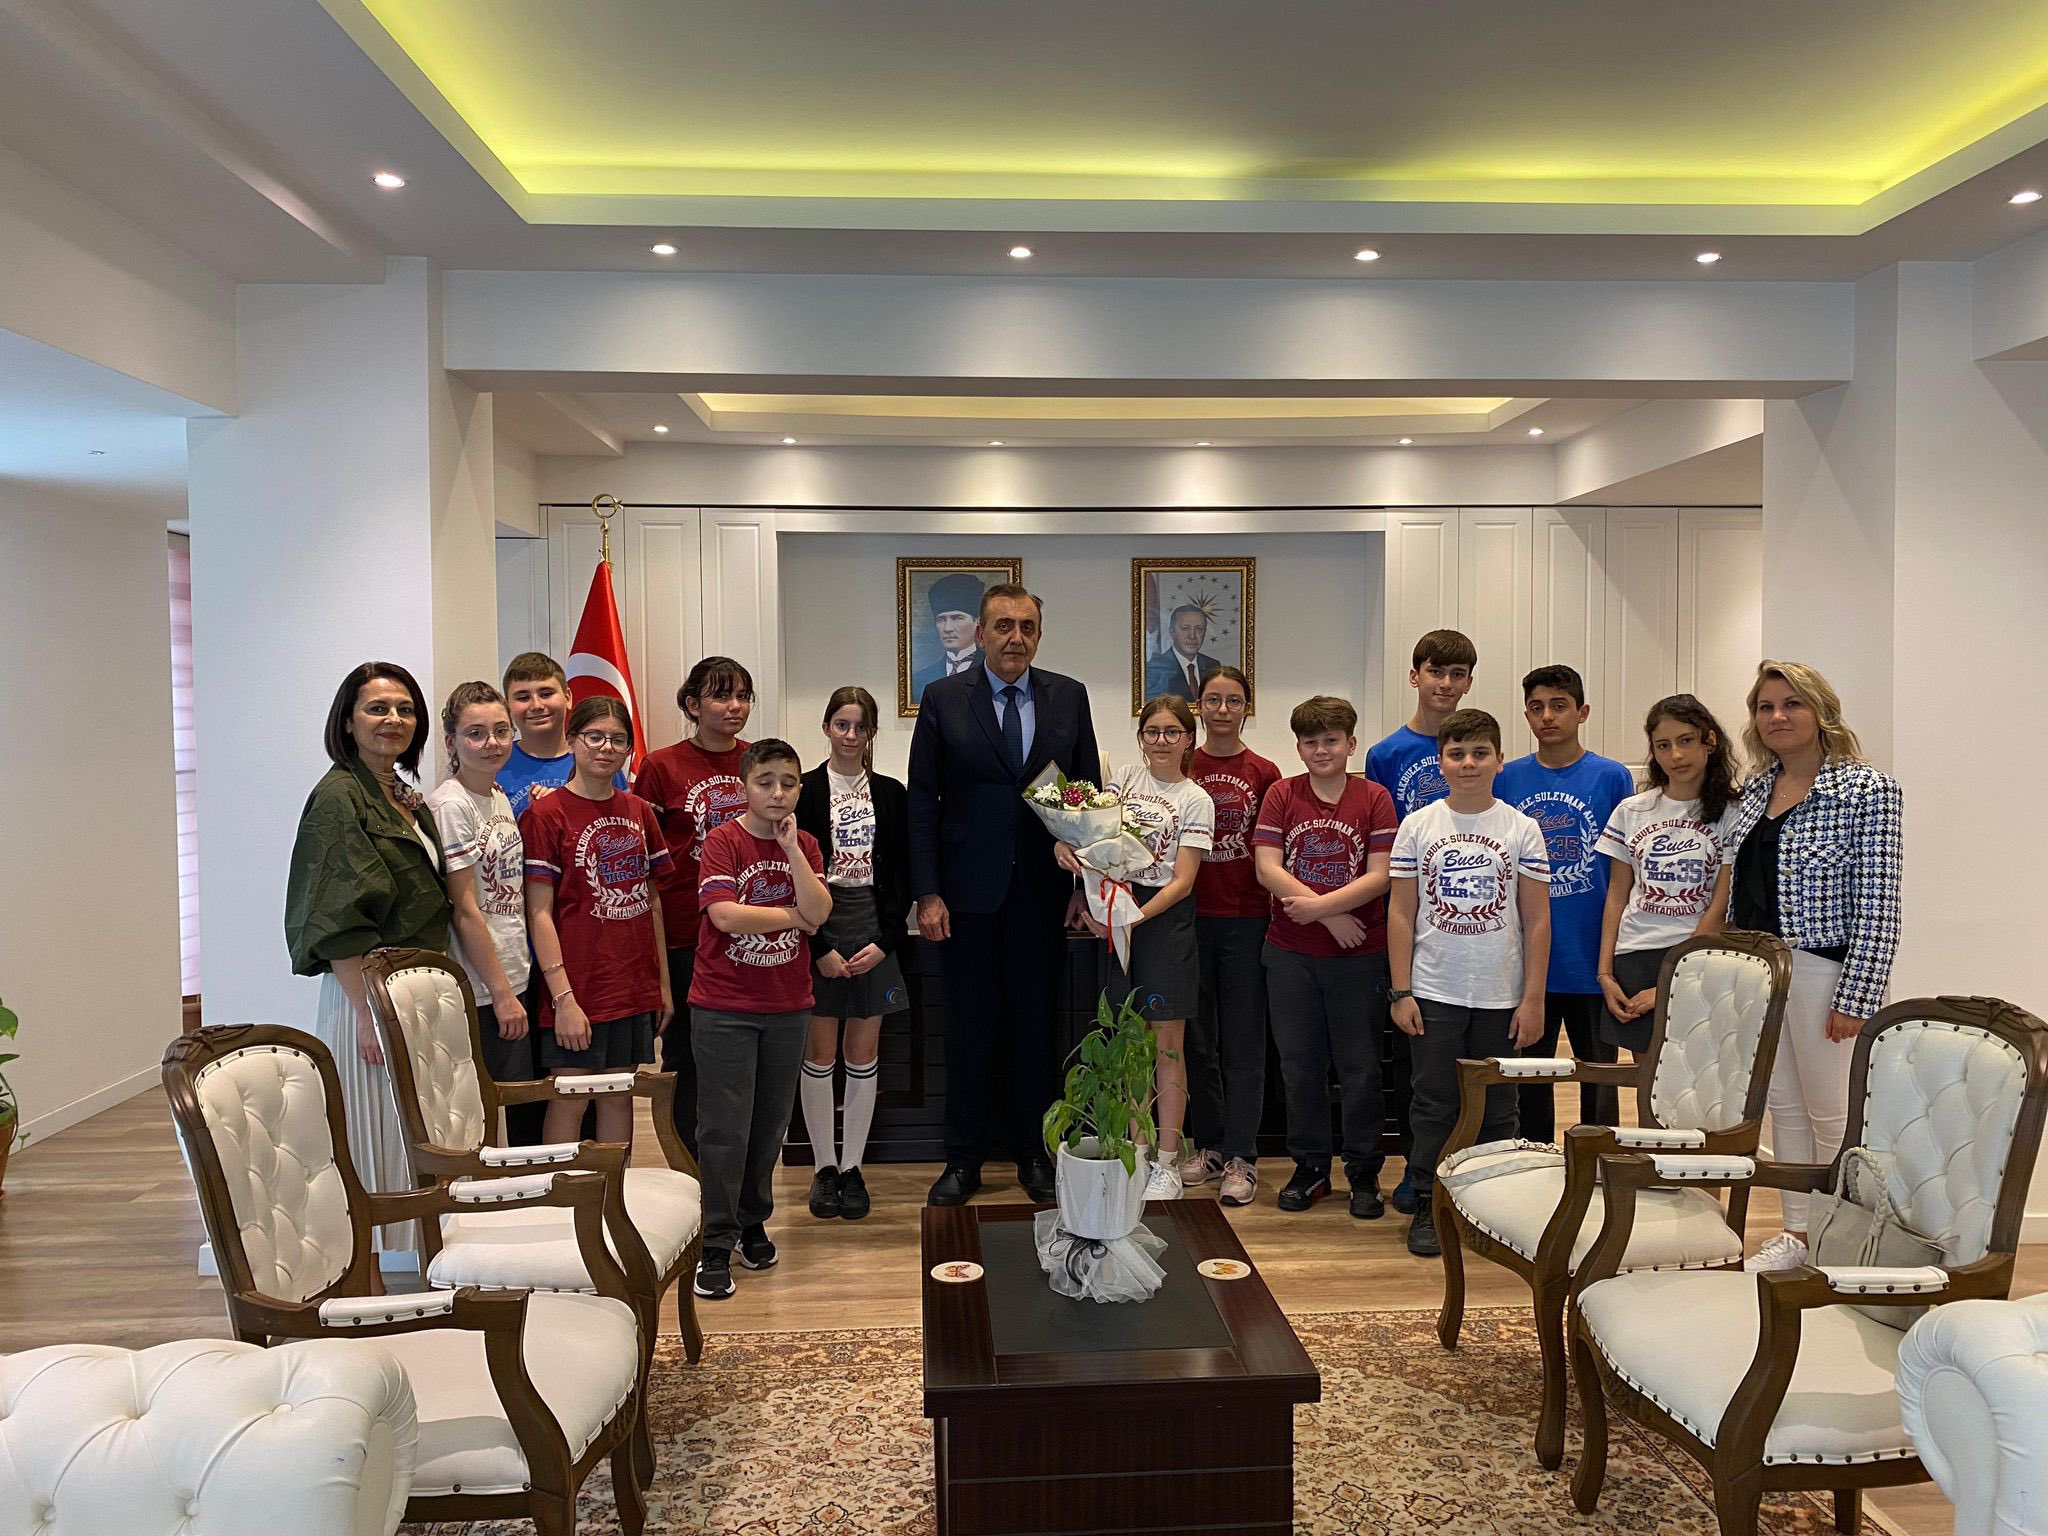 Kaymakam Mahmut Nedim Tunçer, Öğretmen ve Öğrenci Heyetini Kabul Etti, 23 Nisan Bayramı Kutlamaları Gerçekleştirildi